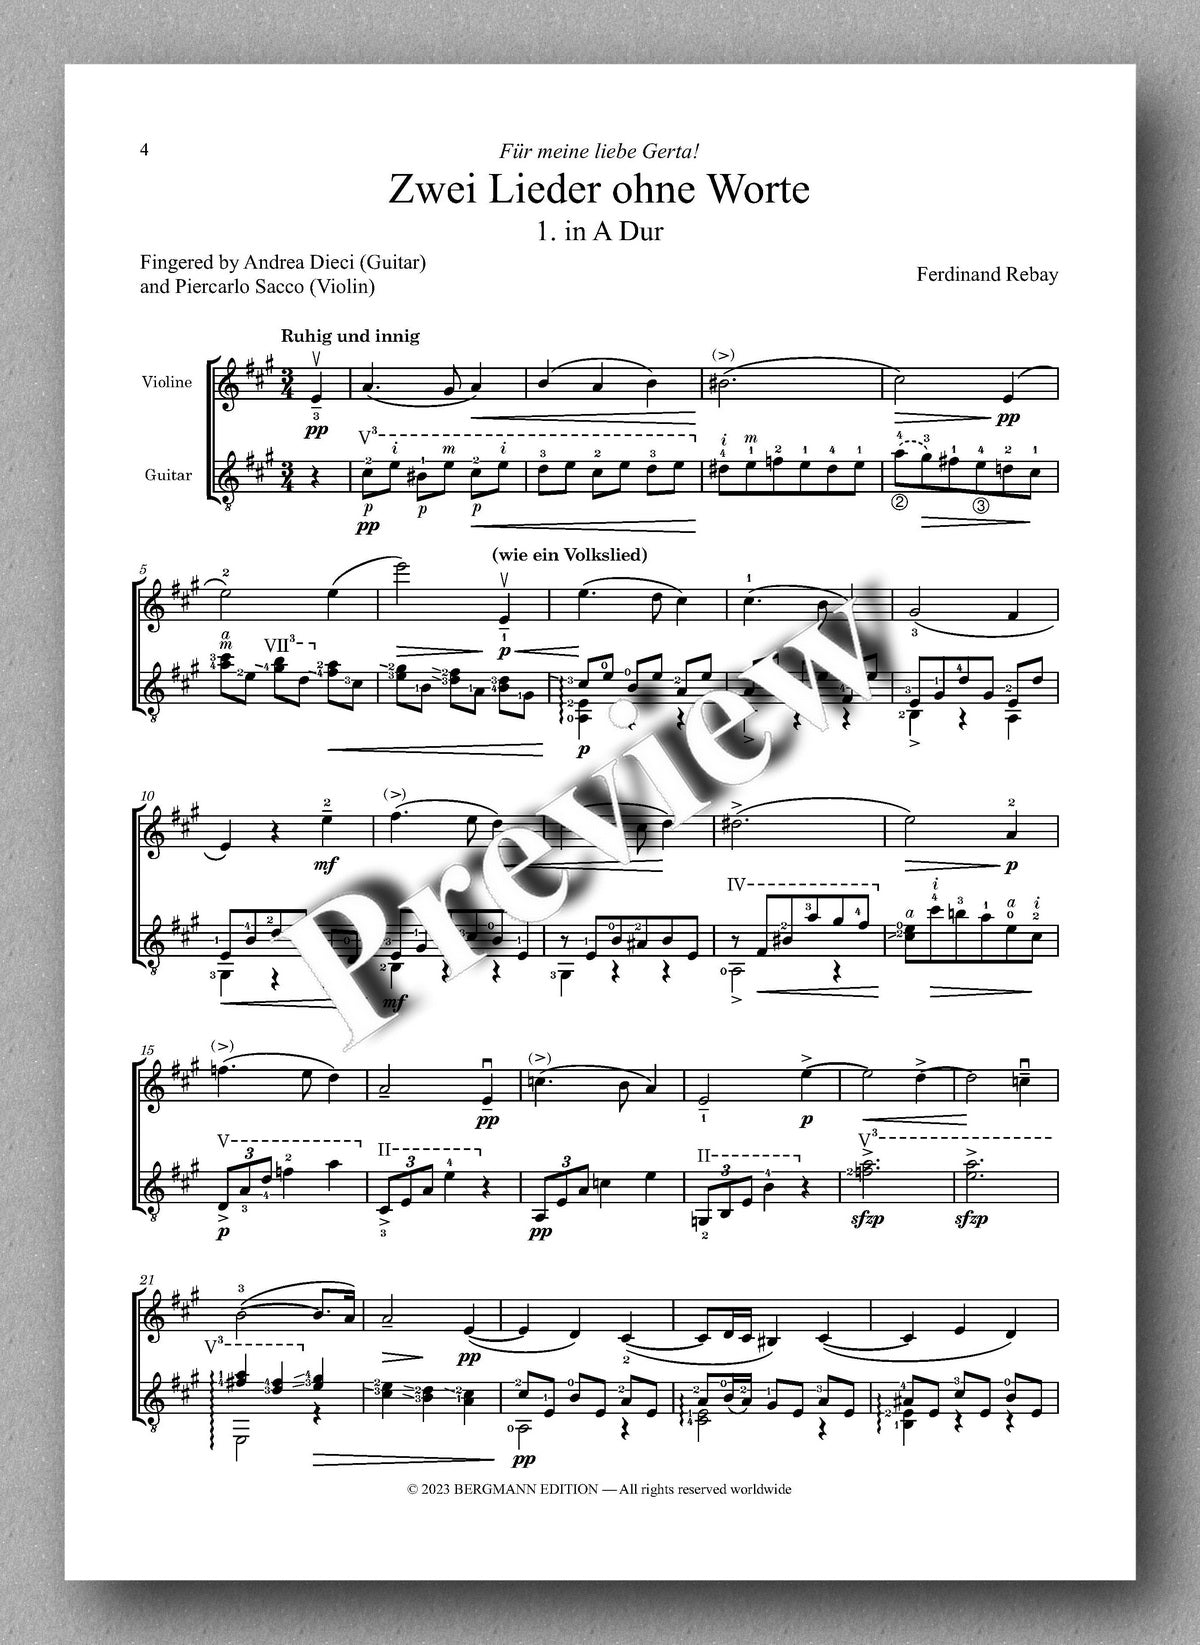 Ferdinand Rebay, Zwei Lieder ohne Worte - preview of the music score 1